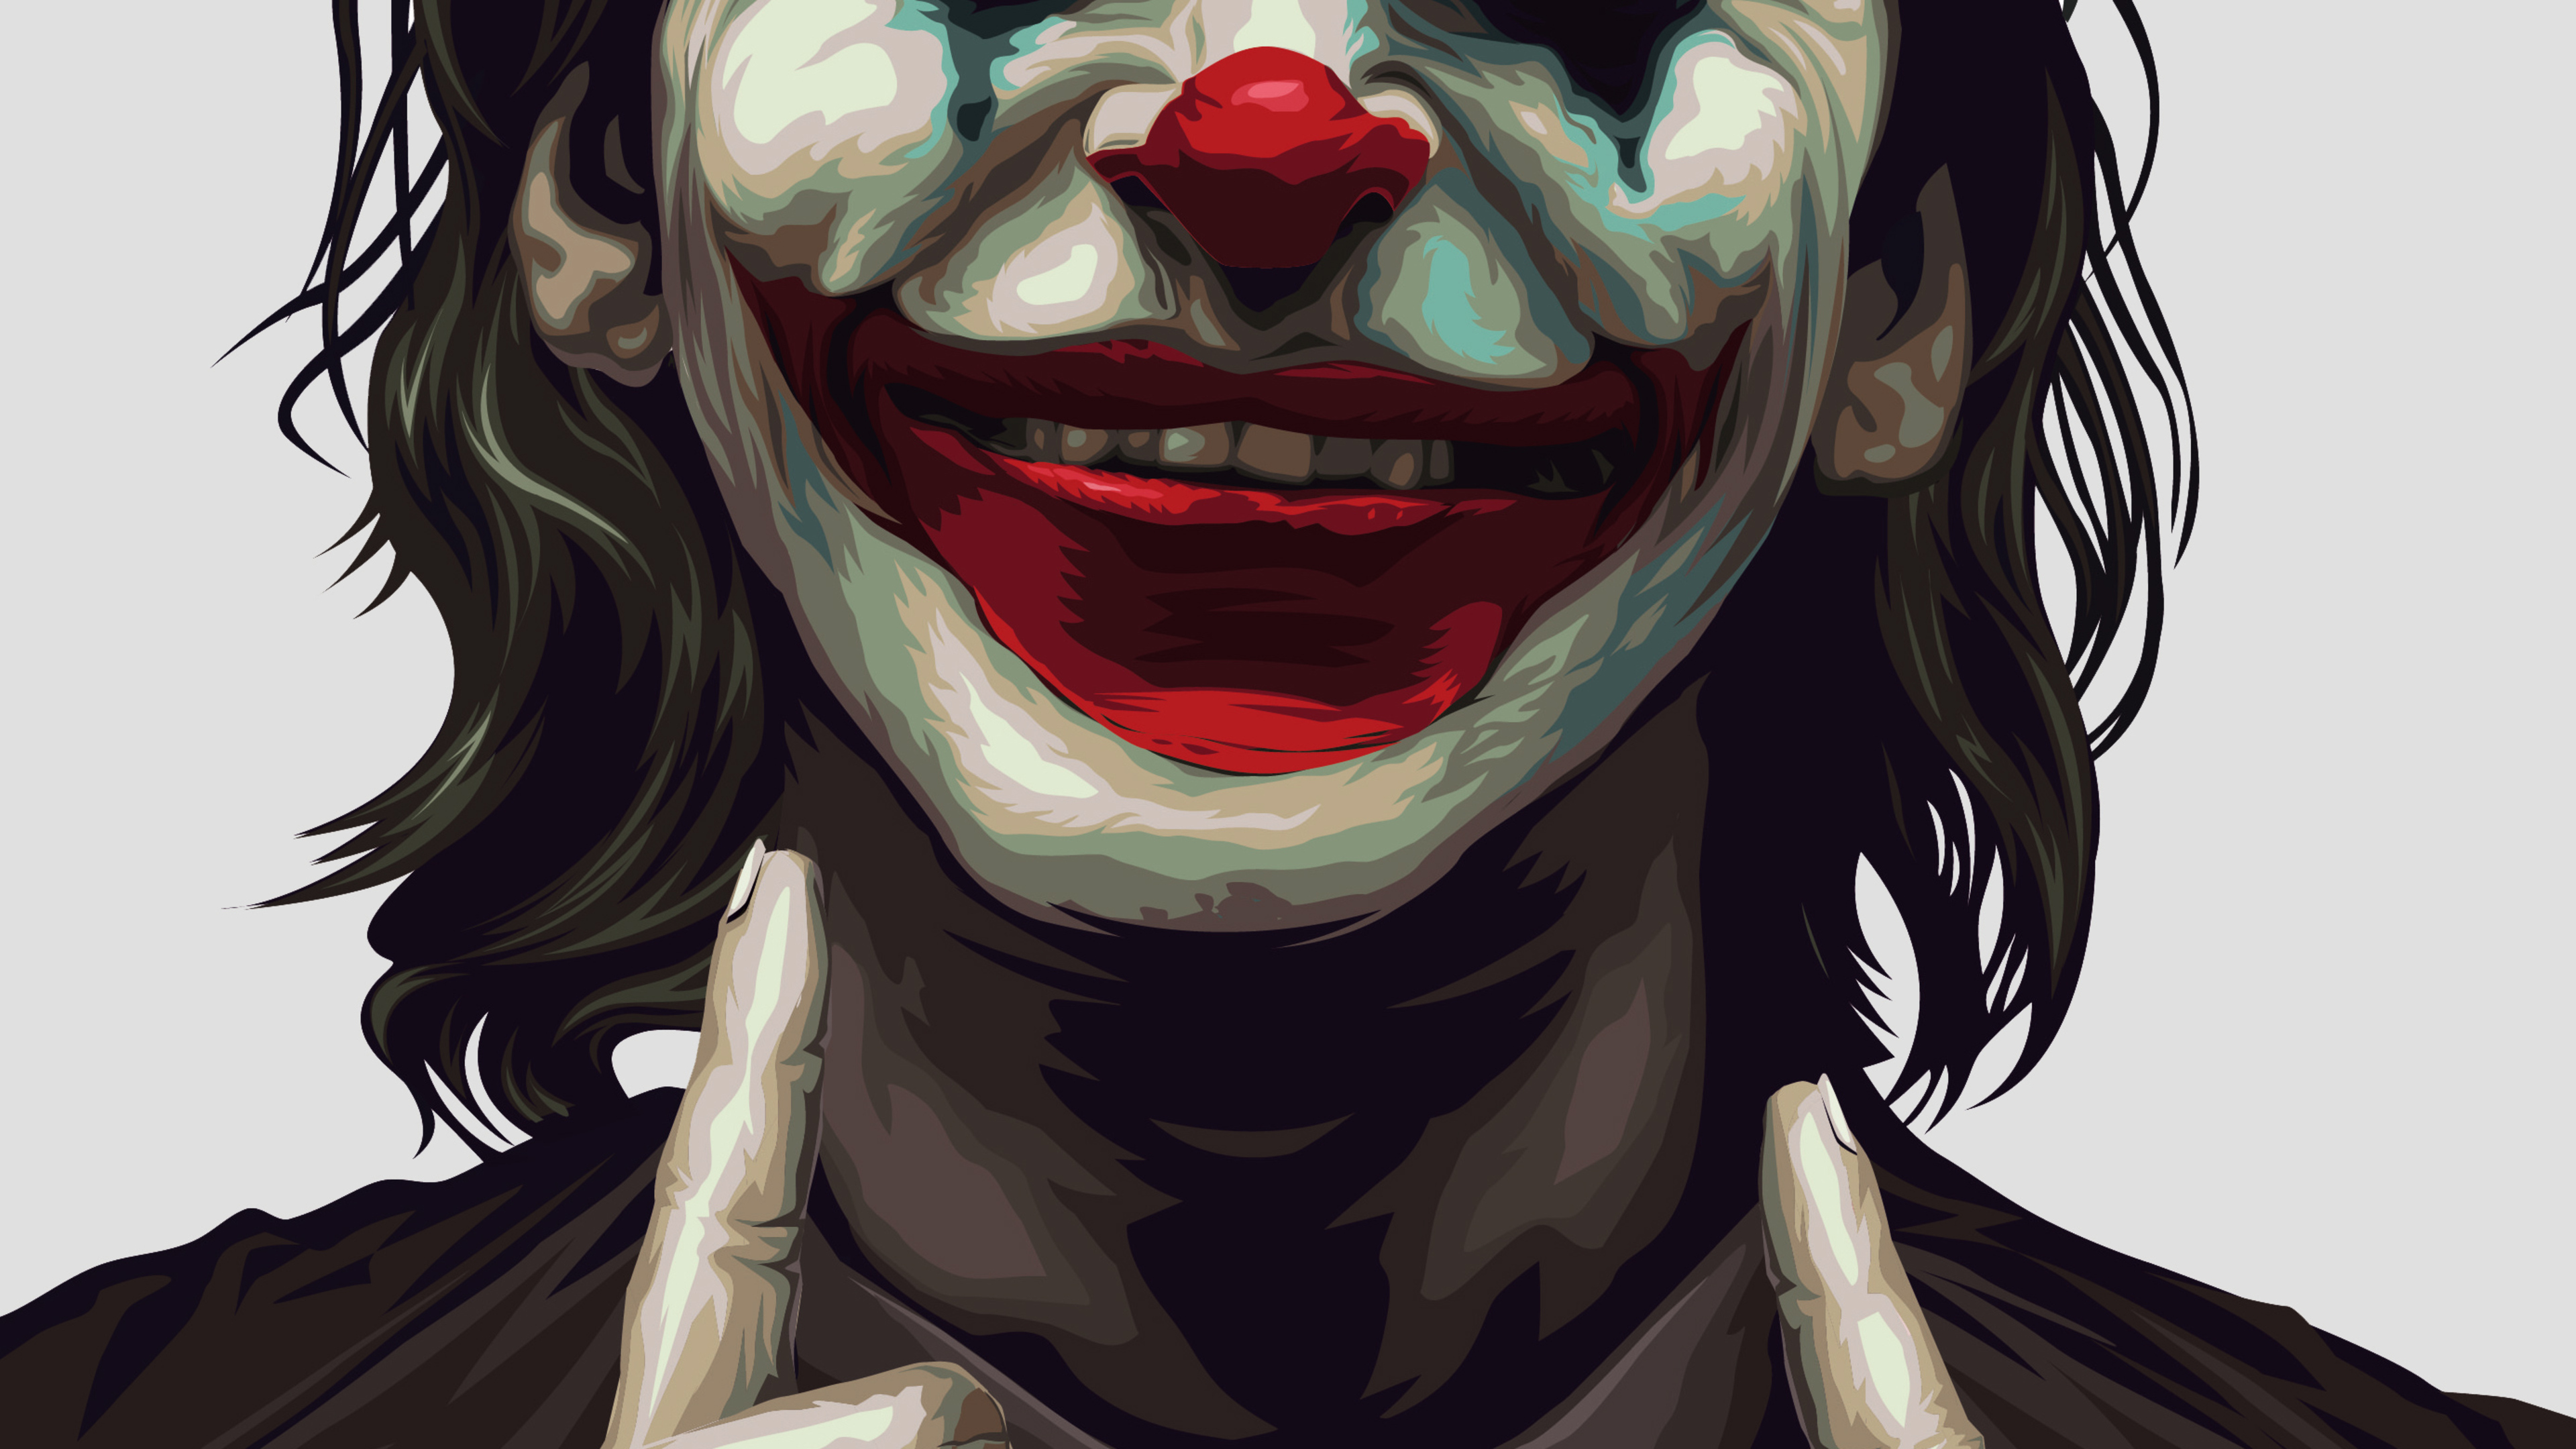 Джокер 1488 ава. Джокер Хоакин аватар. Джокер Хоакин Феникс улыбка.